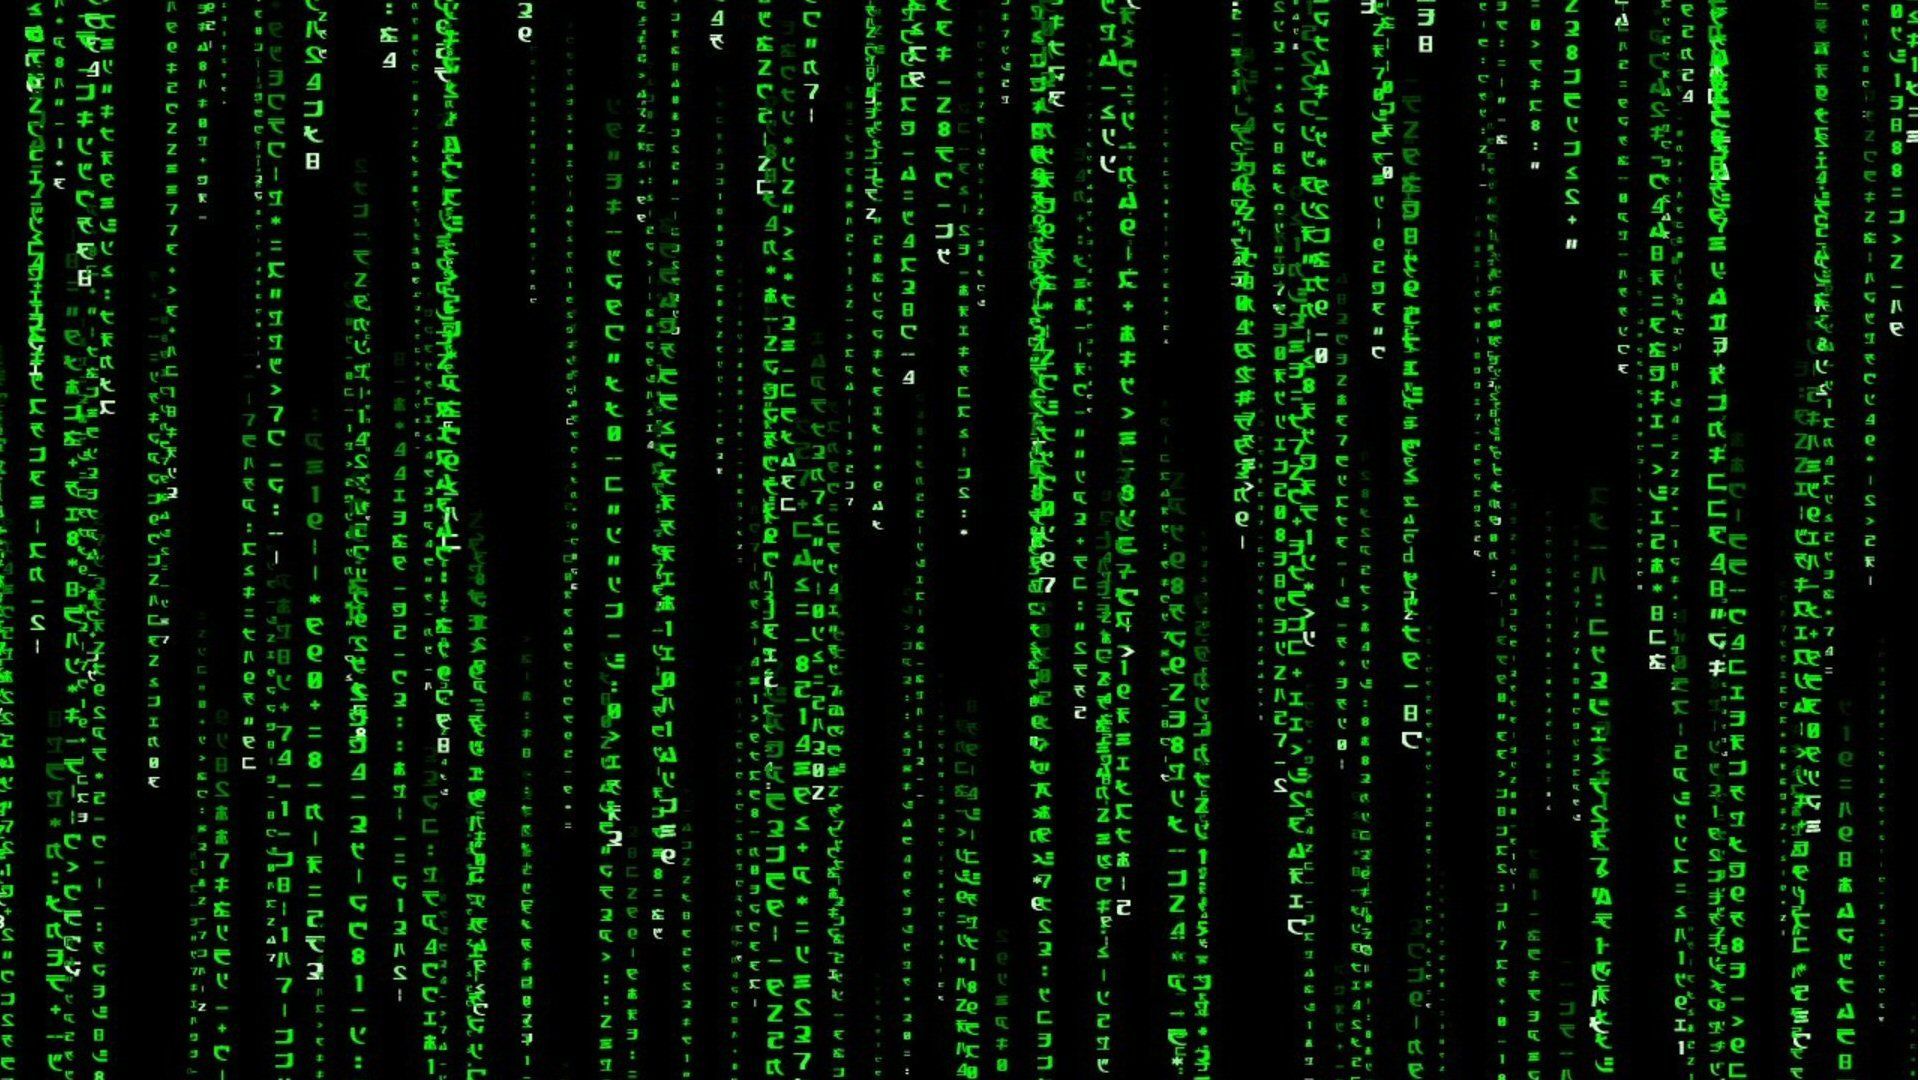 Download Matrix Code Wallpaper High .com